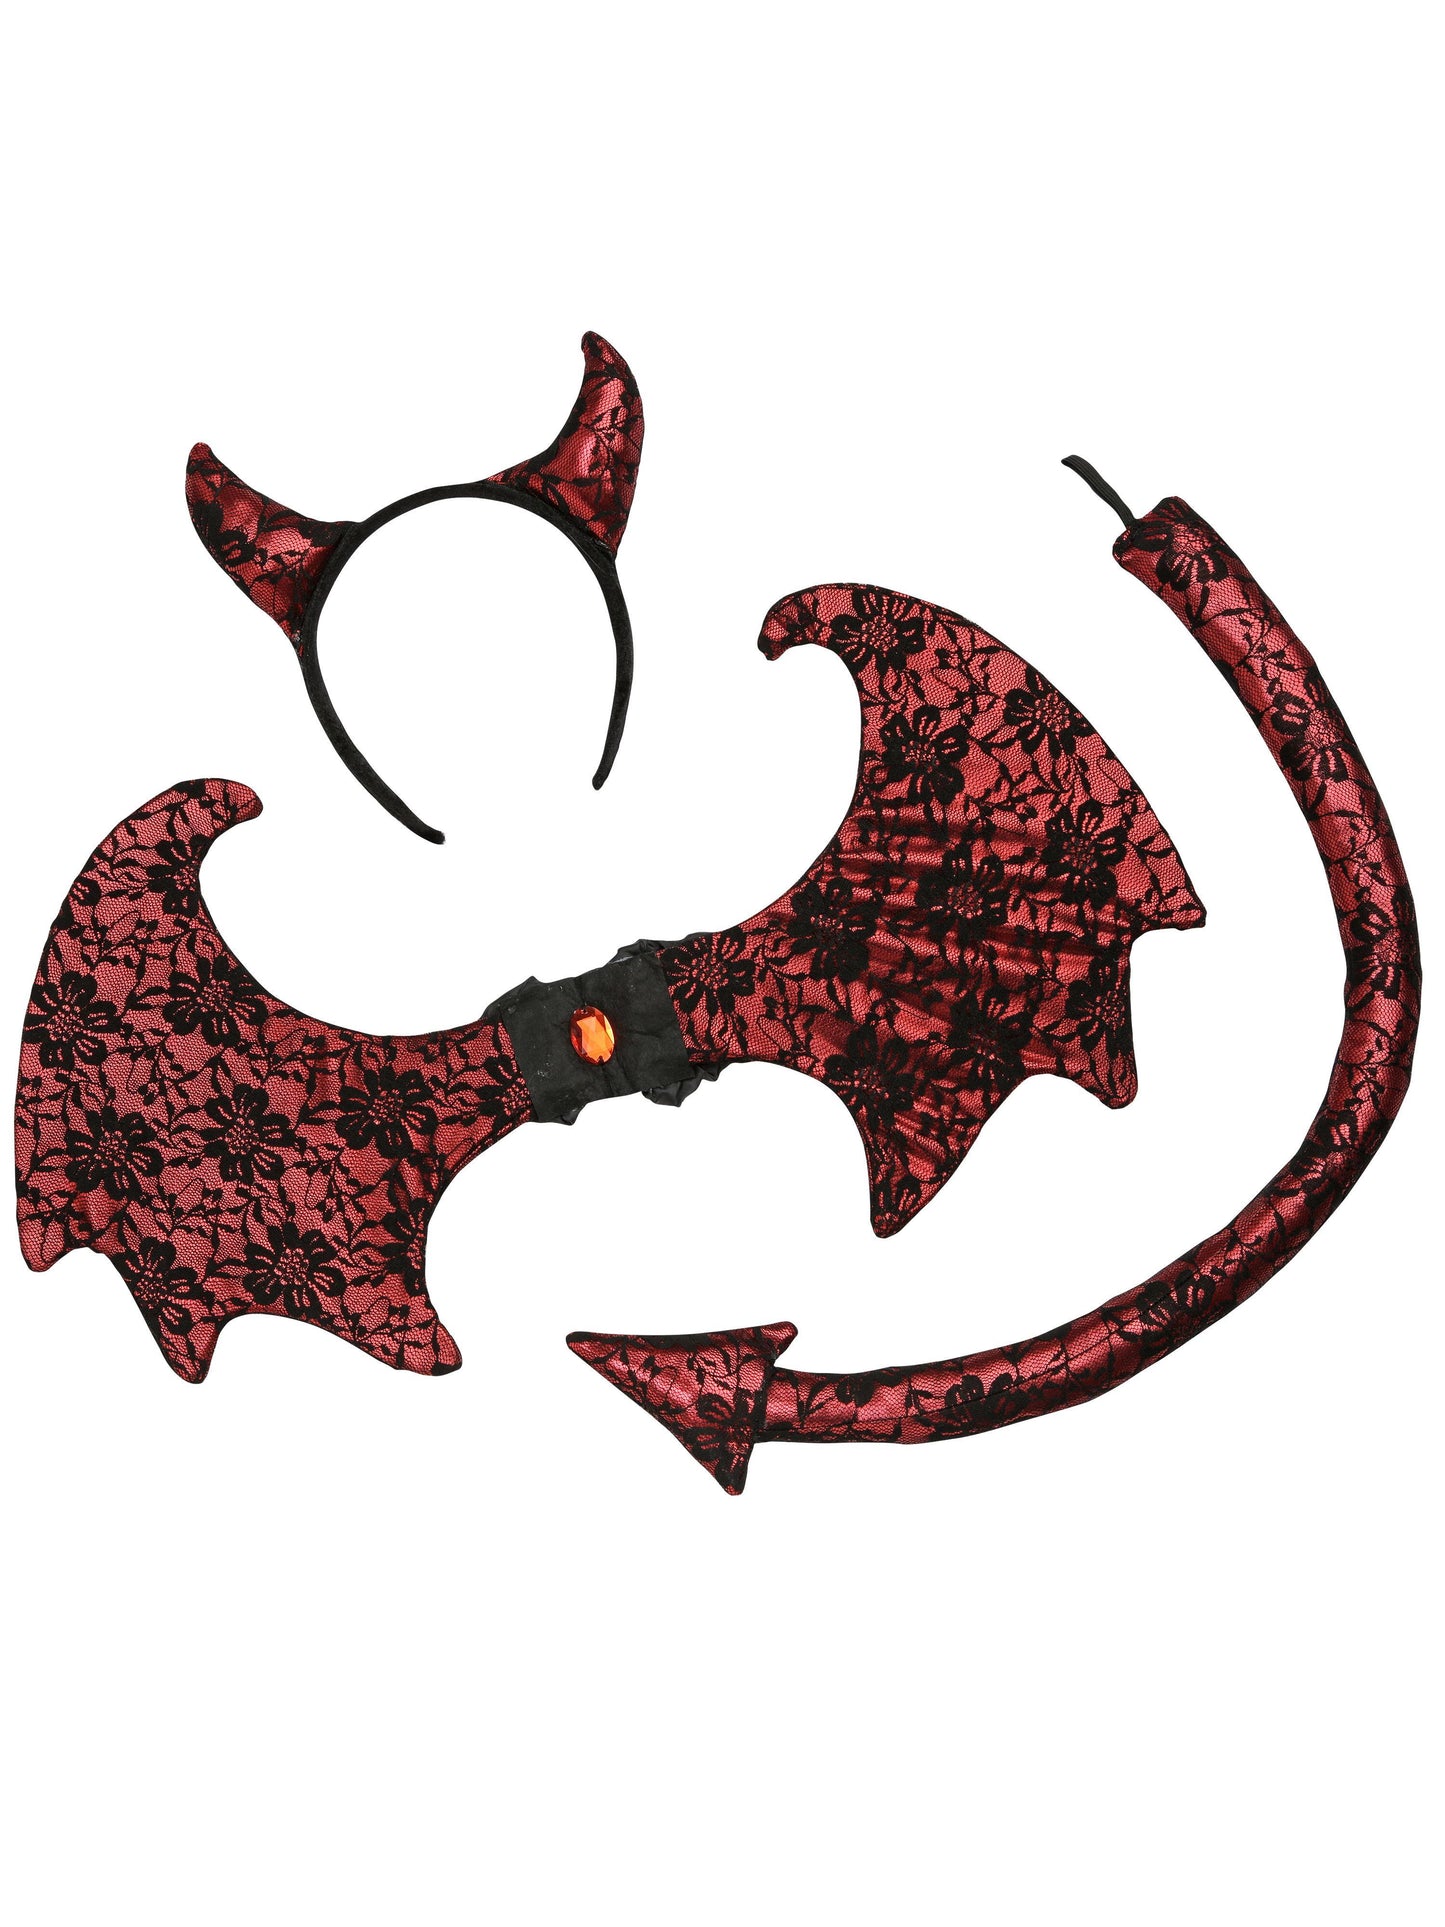 Retro Lace Devil Kit, Black & Red